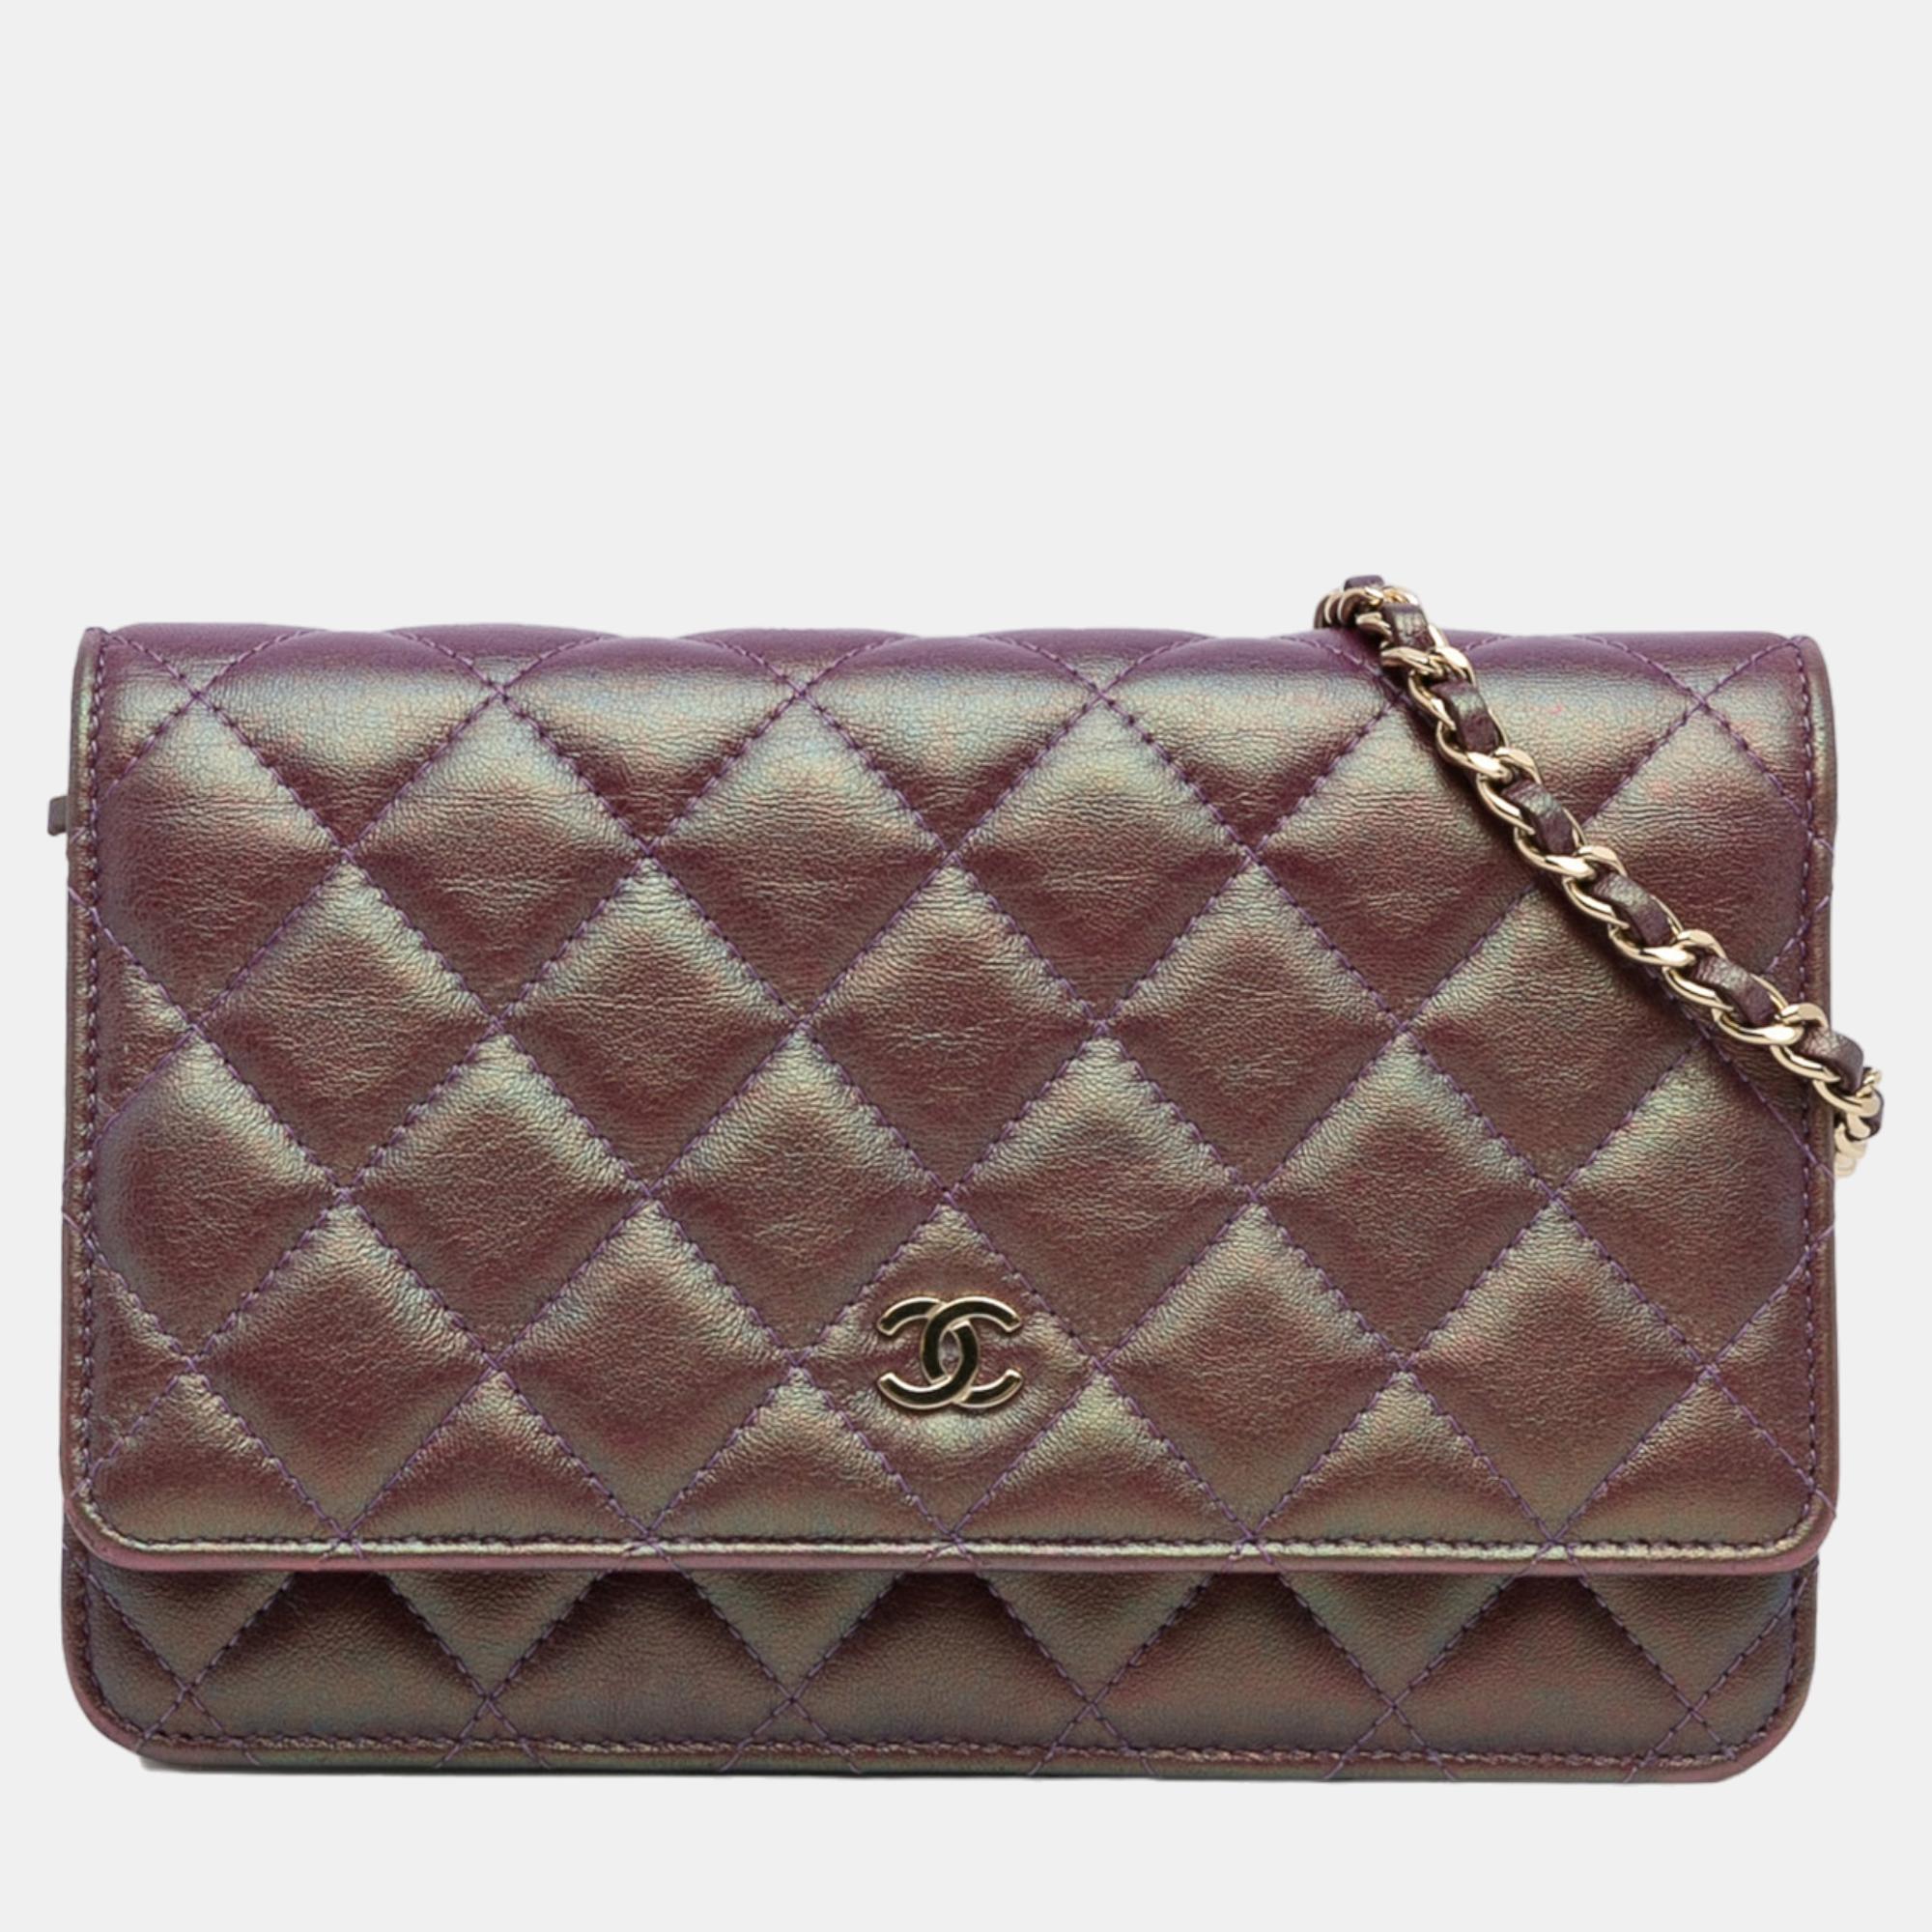 Chanel purple iridescent lambskin cc wallet on chain